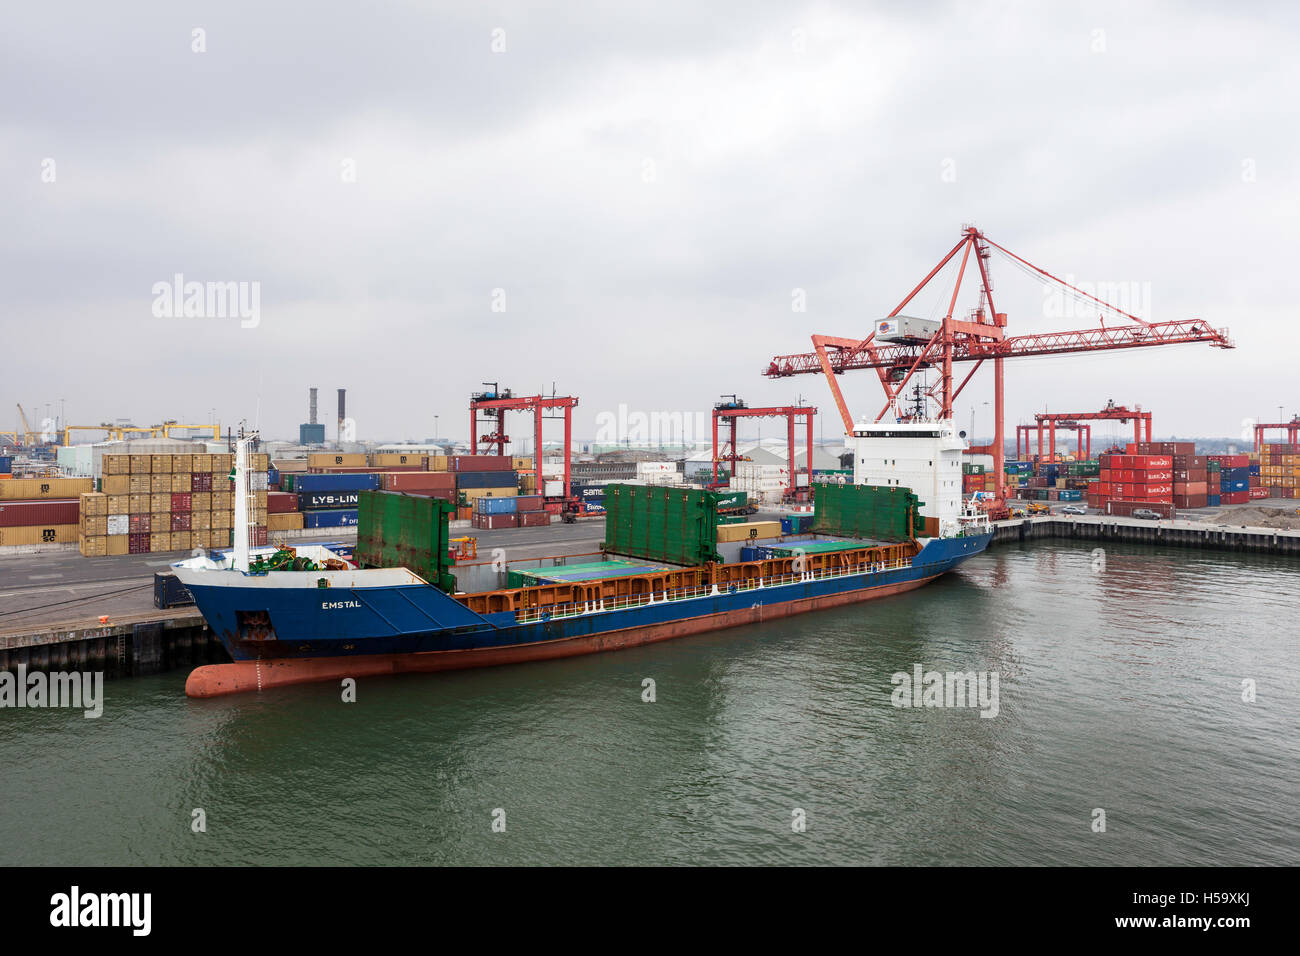 Image industrielle montrant un porte-conteneurs en cours de chargement, le port de Dublin, Irlande Banque D'Images